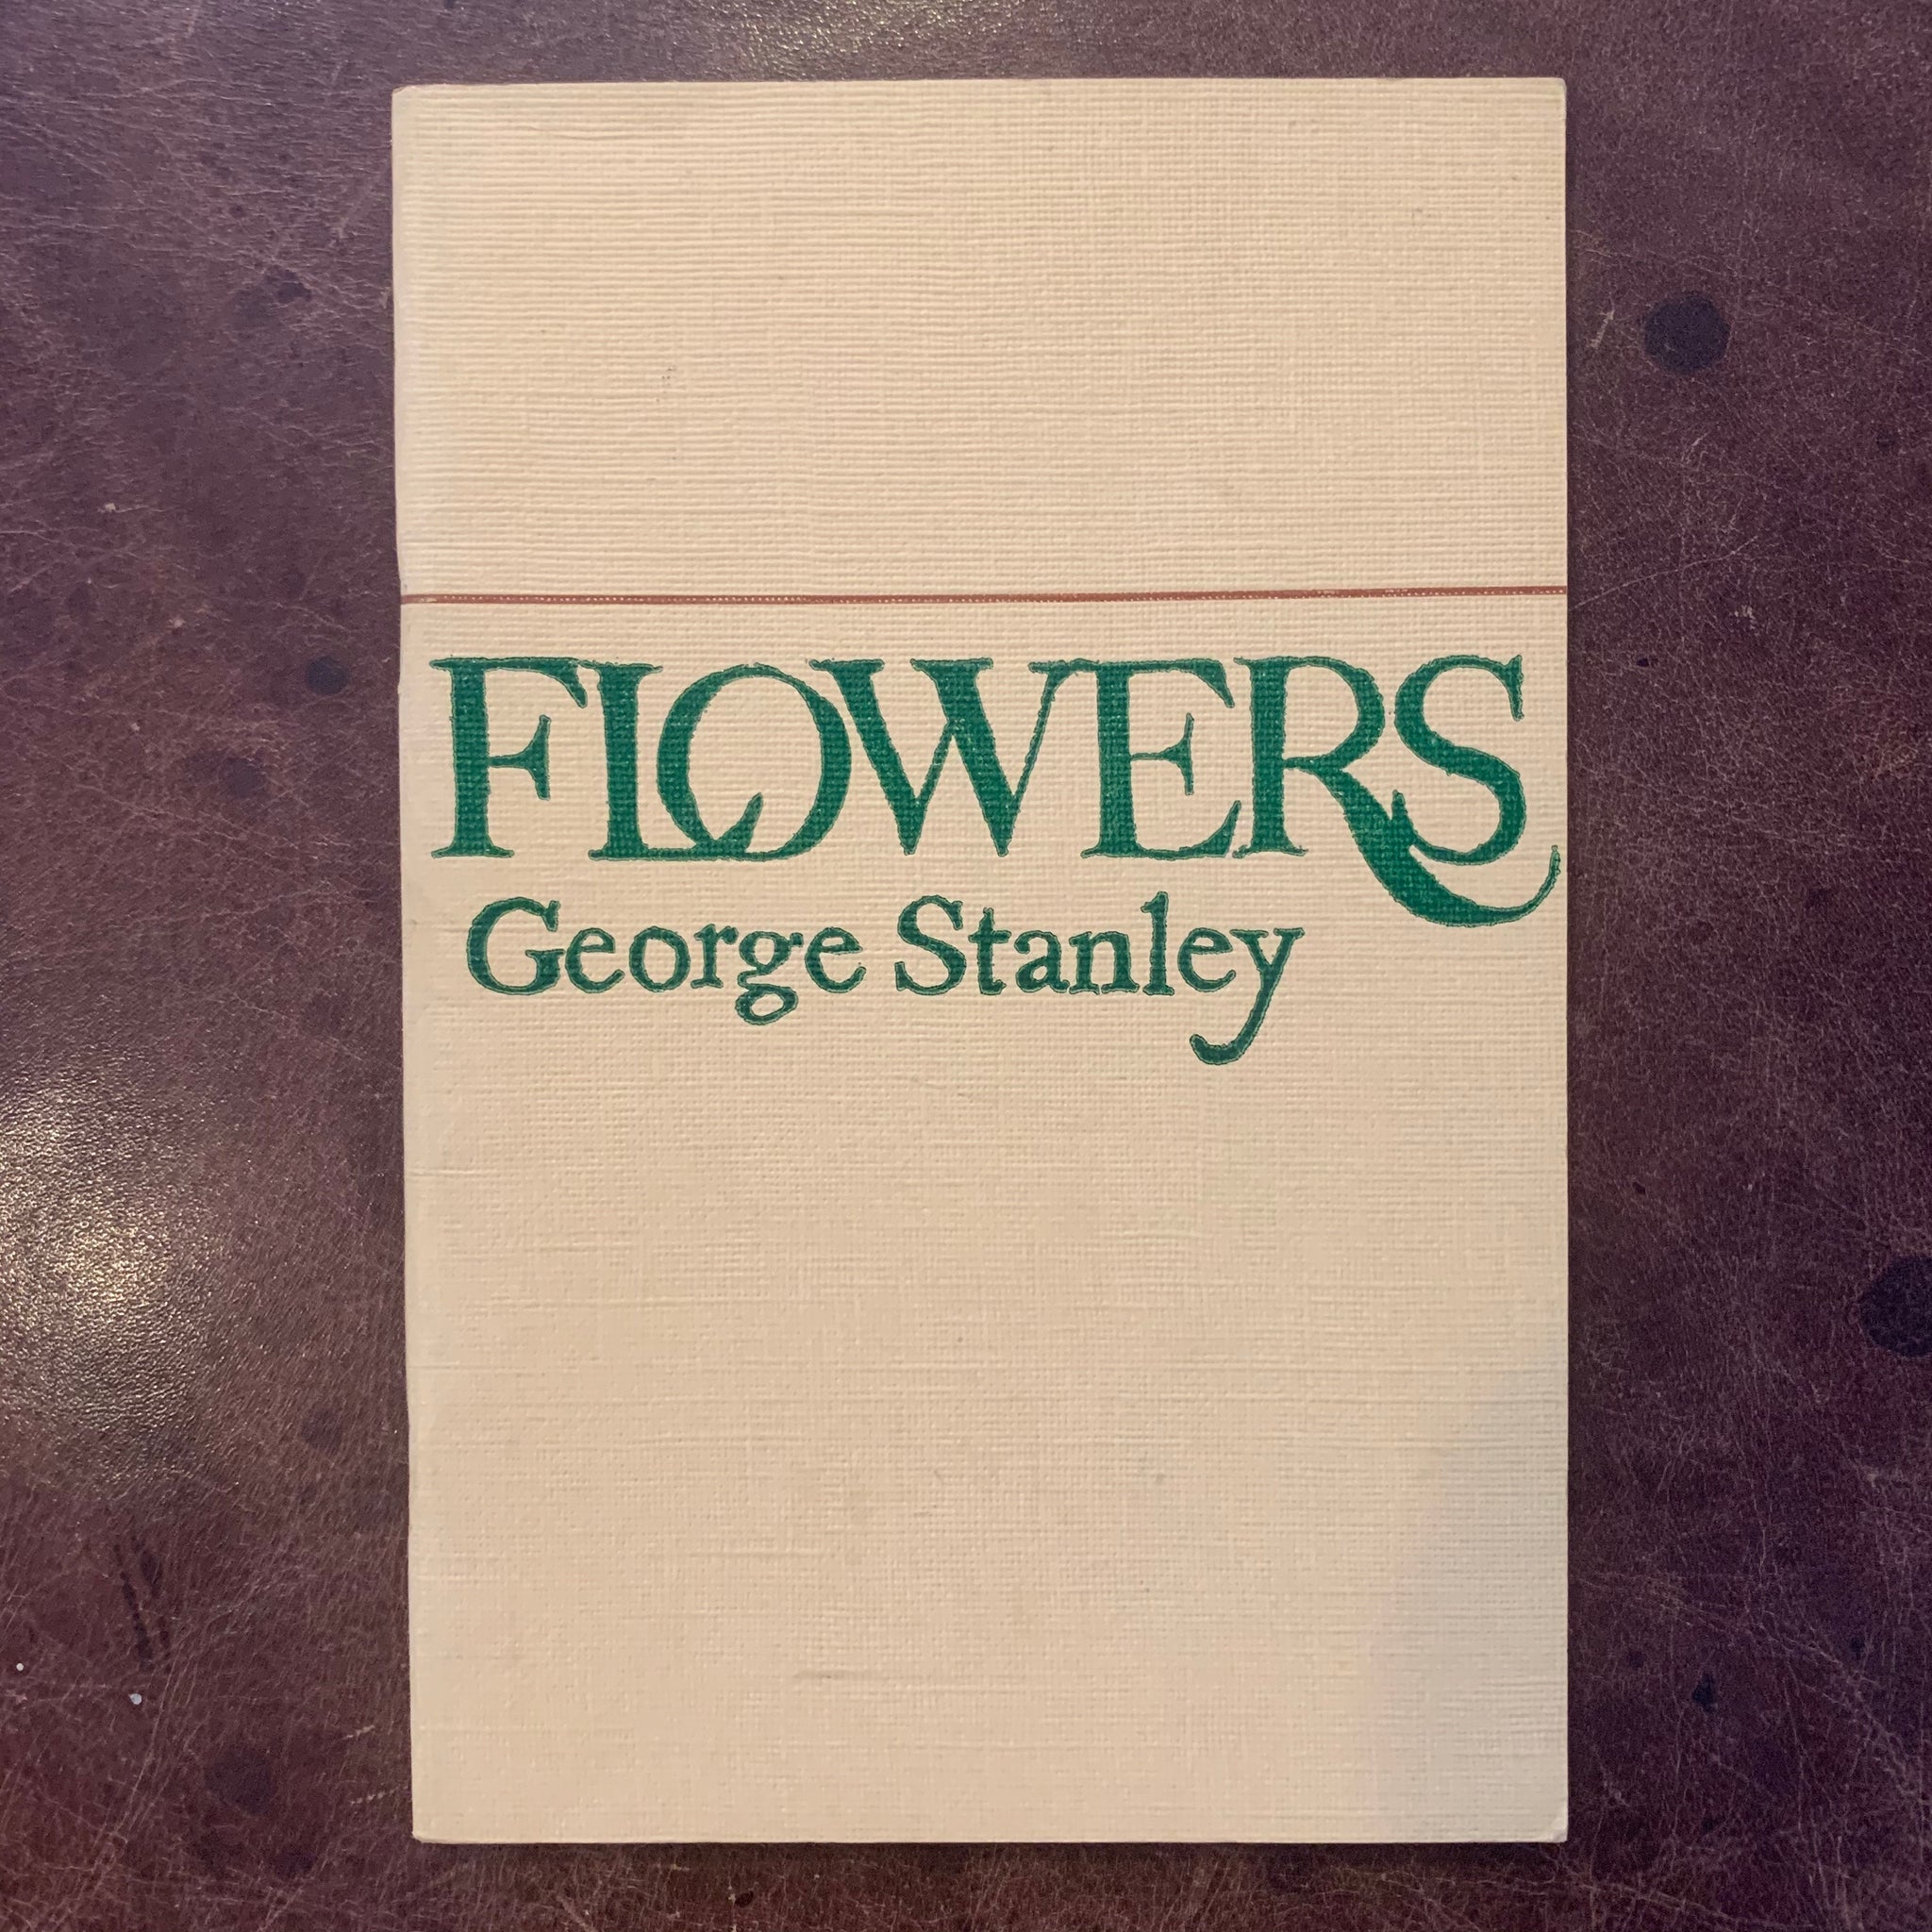 Flowers by George Stanley poetry